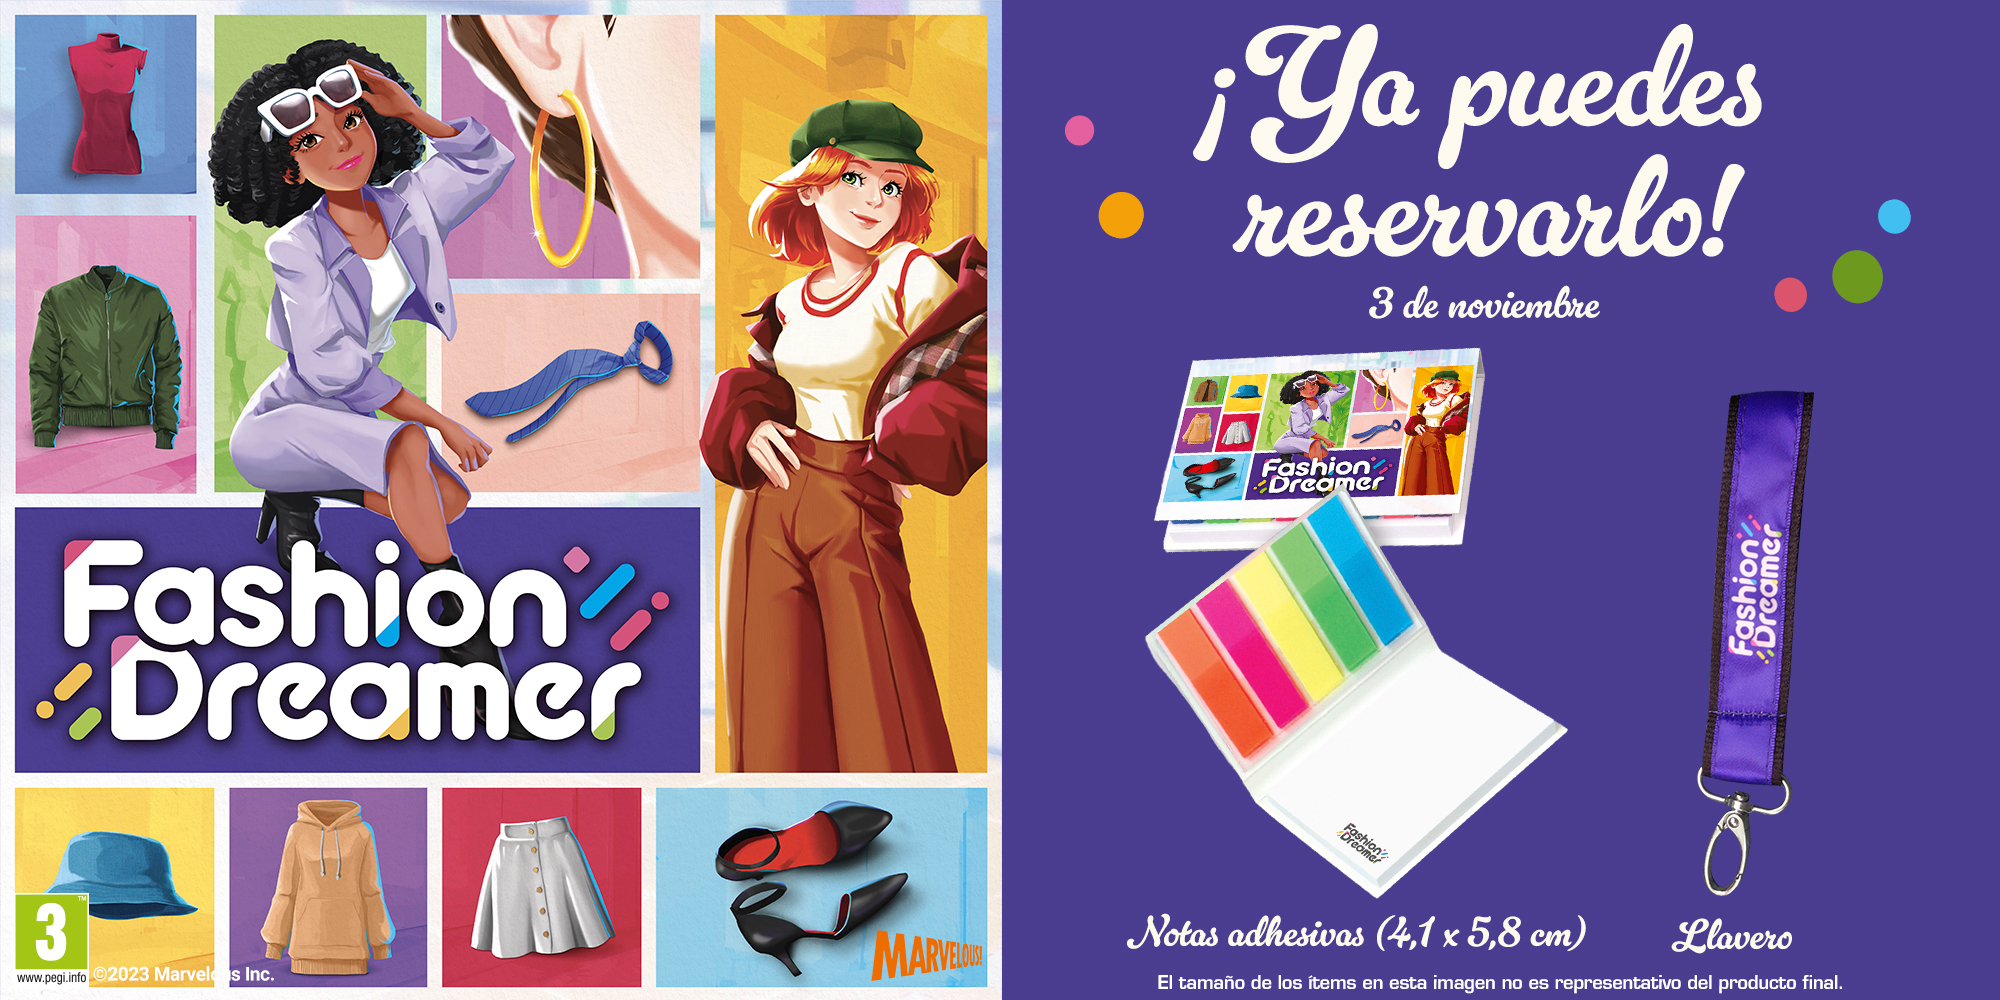 Fashion Dreamer (Nintendo Switch) – Disponível a 3 de novembro 